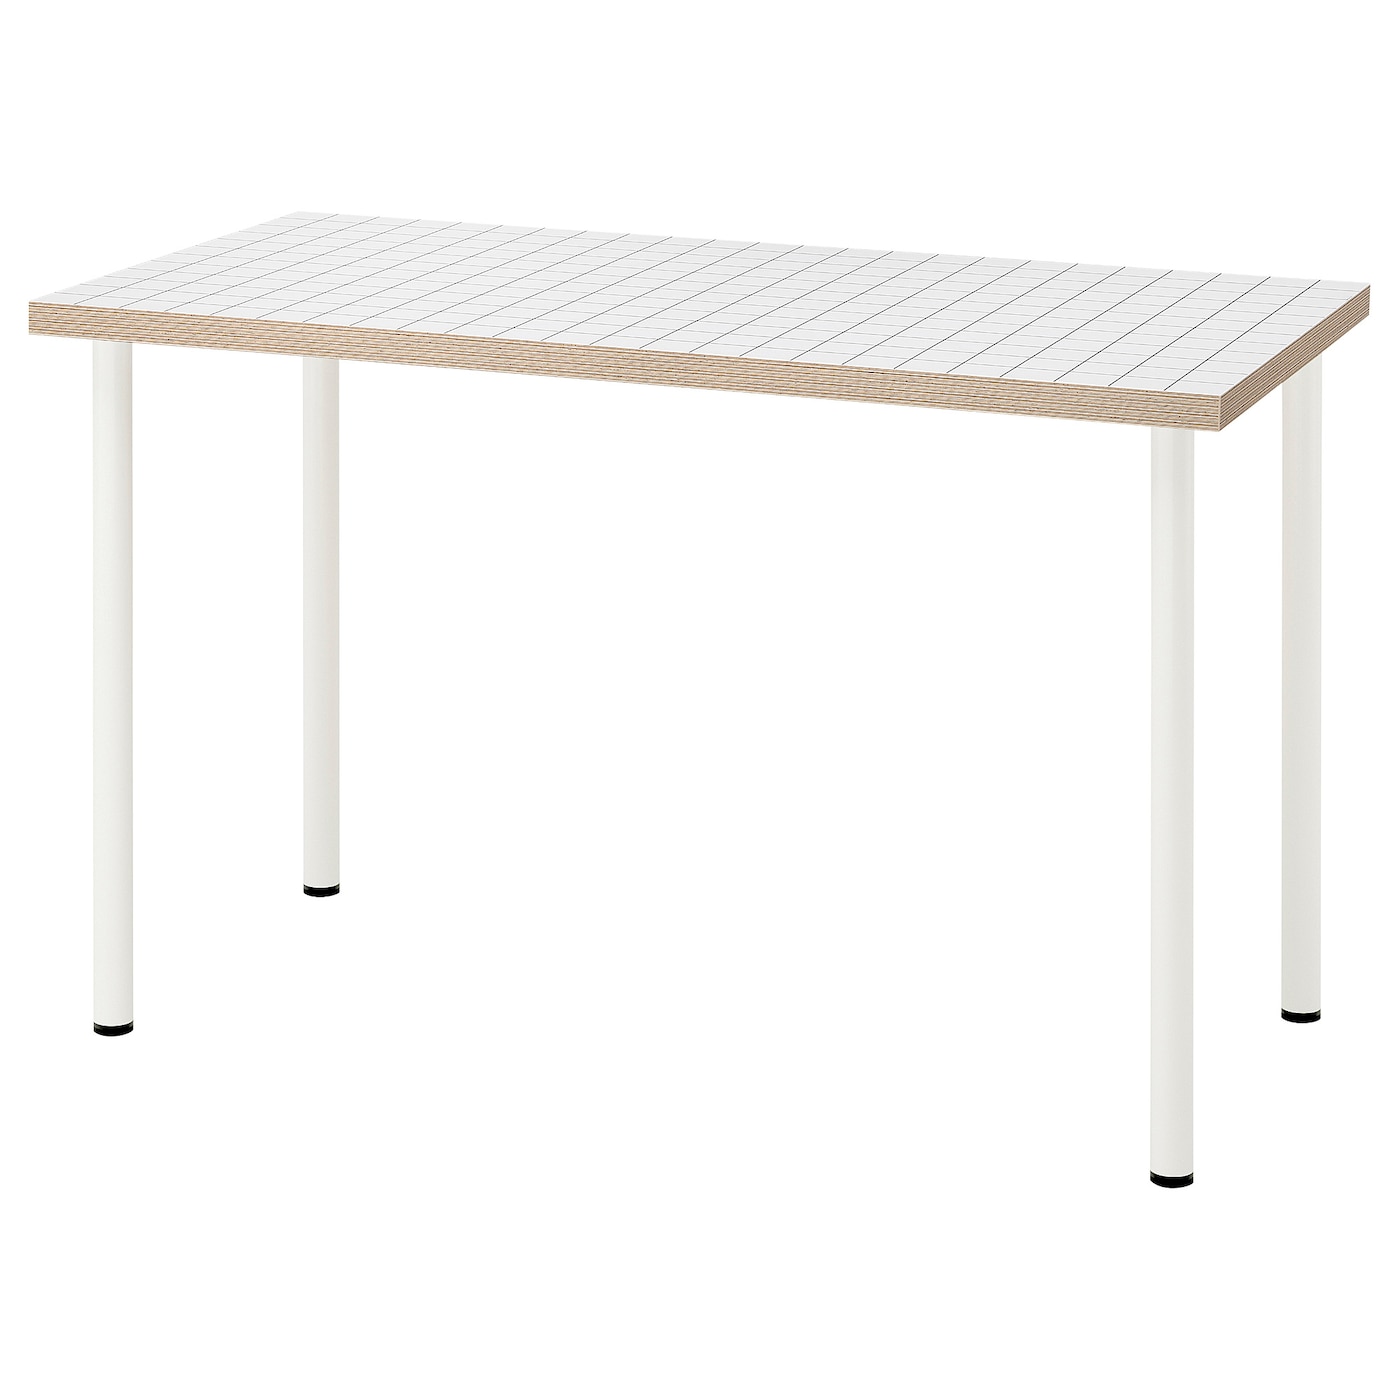 Письменный стол - IKEA LAGKAPTEN/ADILS, 120х60 см, антрацит/белый, ЛАГКАПТЕН/АДИЛЬС ИКЕА